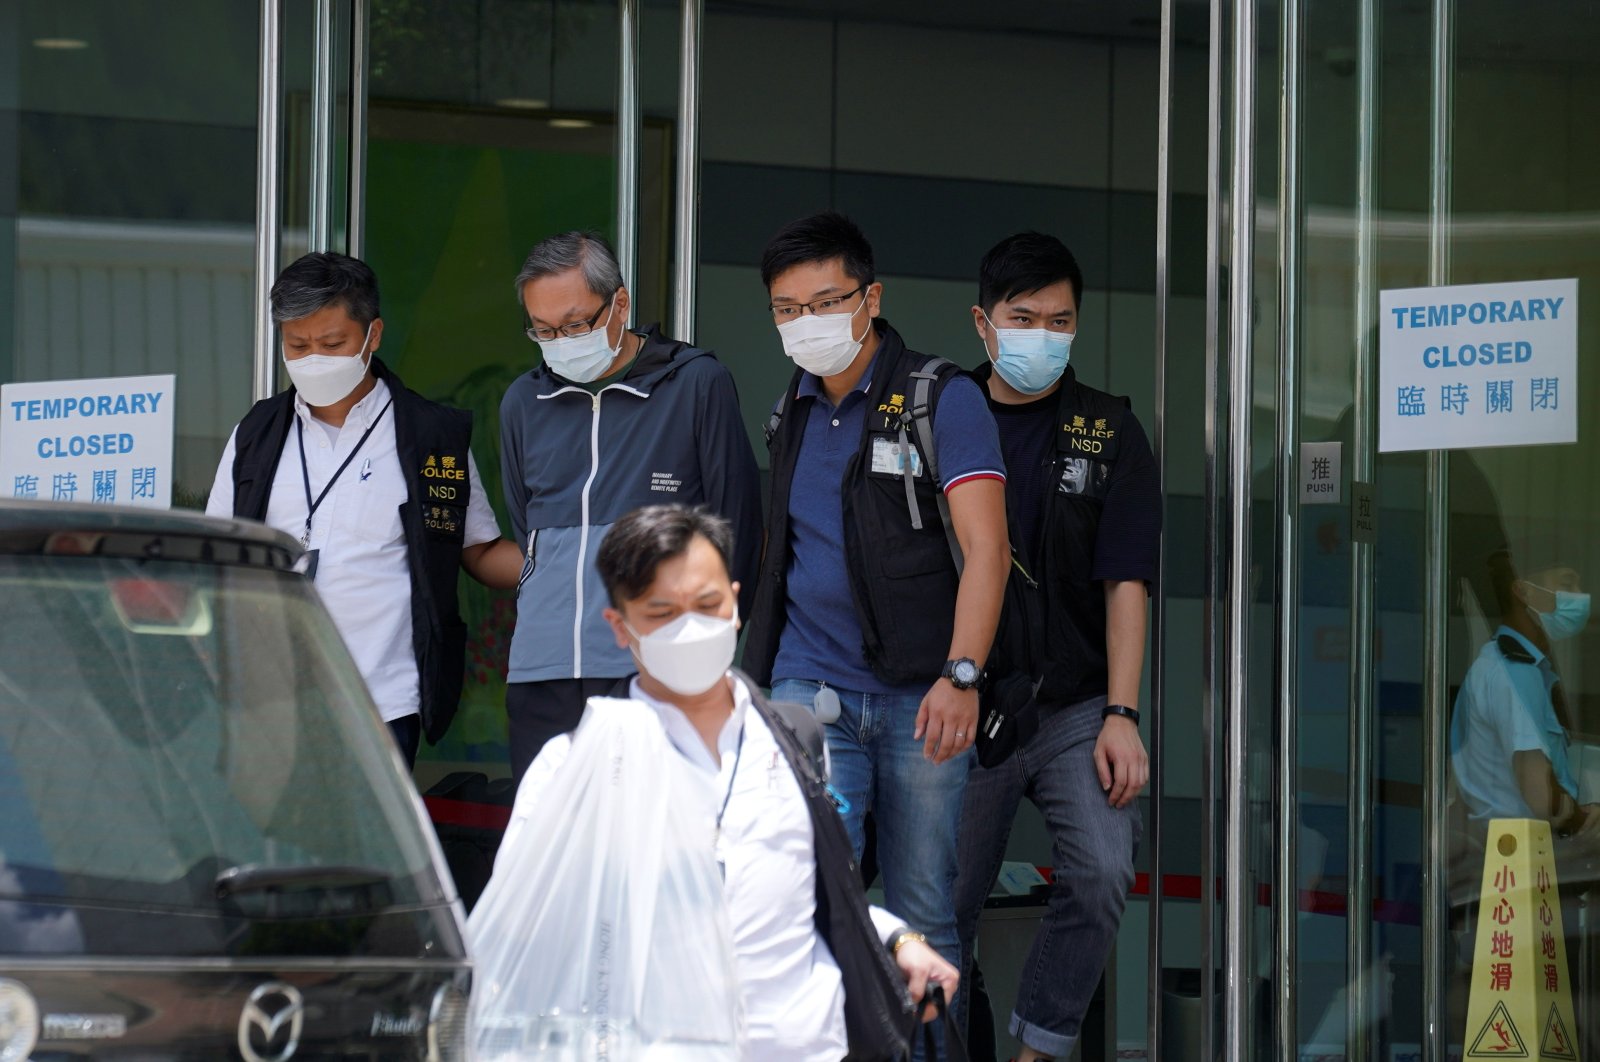 हांगकांग के राष्ट्रीय सुरक्षा विभाग के अधिकारियों द्वारा एप्पल डेली के कार्यालयों में छापामारी की गई. (फोटो: रॉयटर्स)